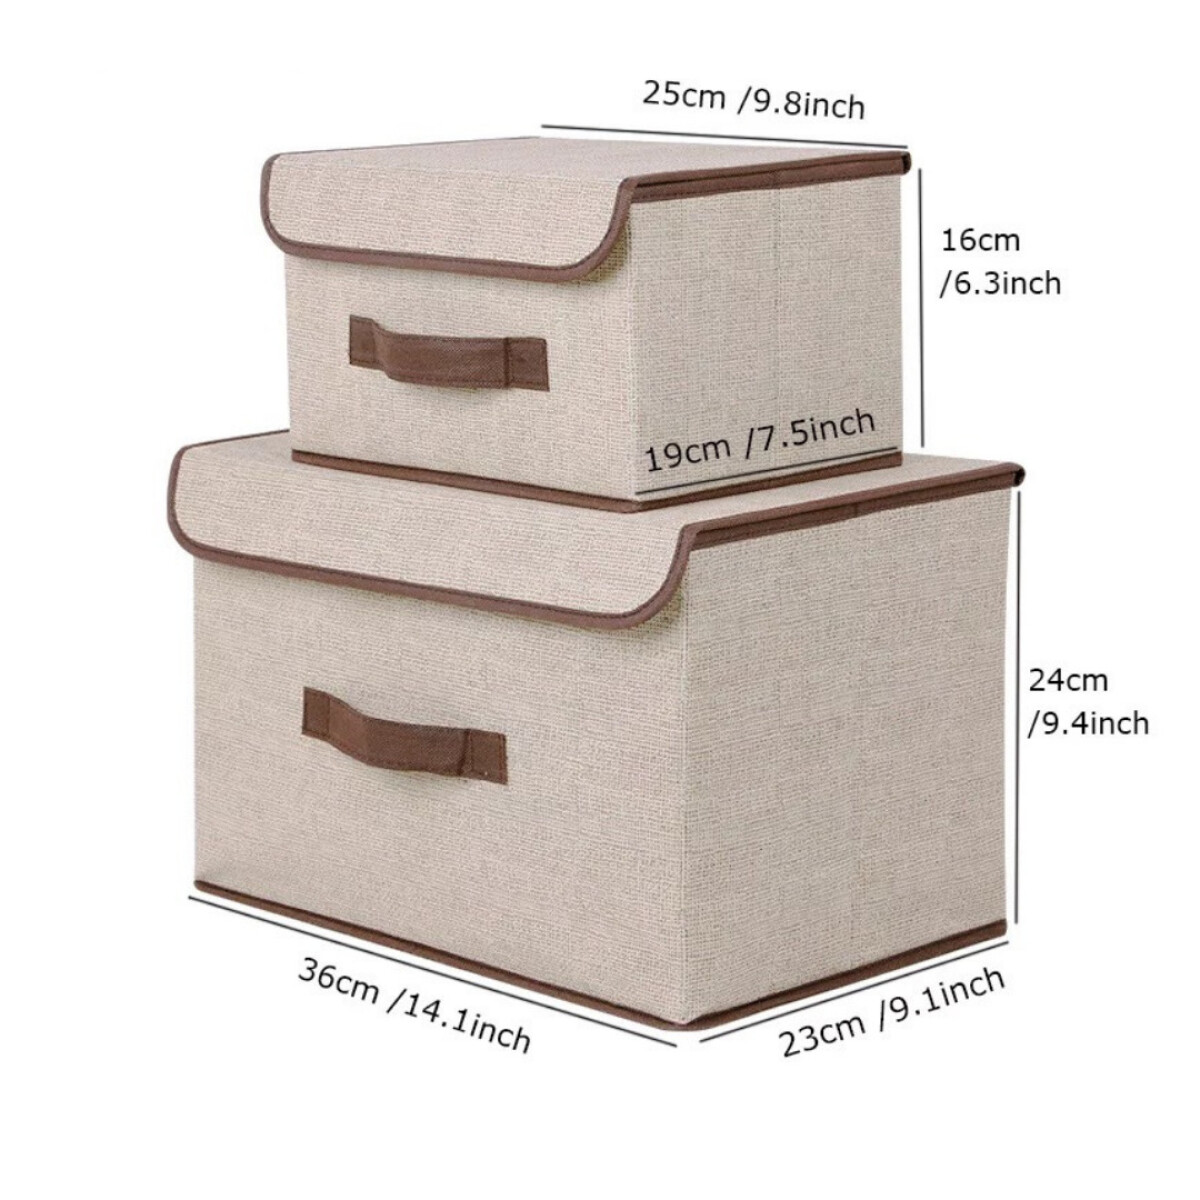 Organizador Caja Box Plegable Apilable X 2 Unidades 